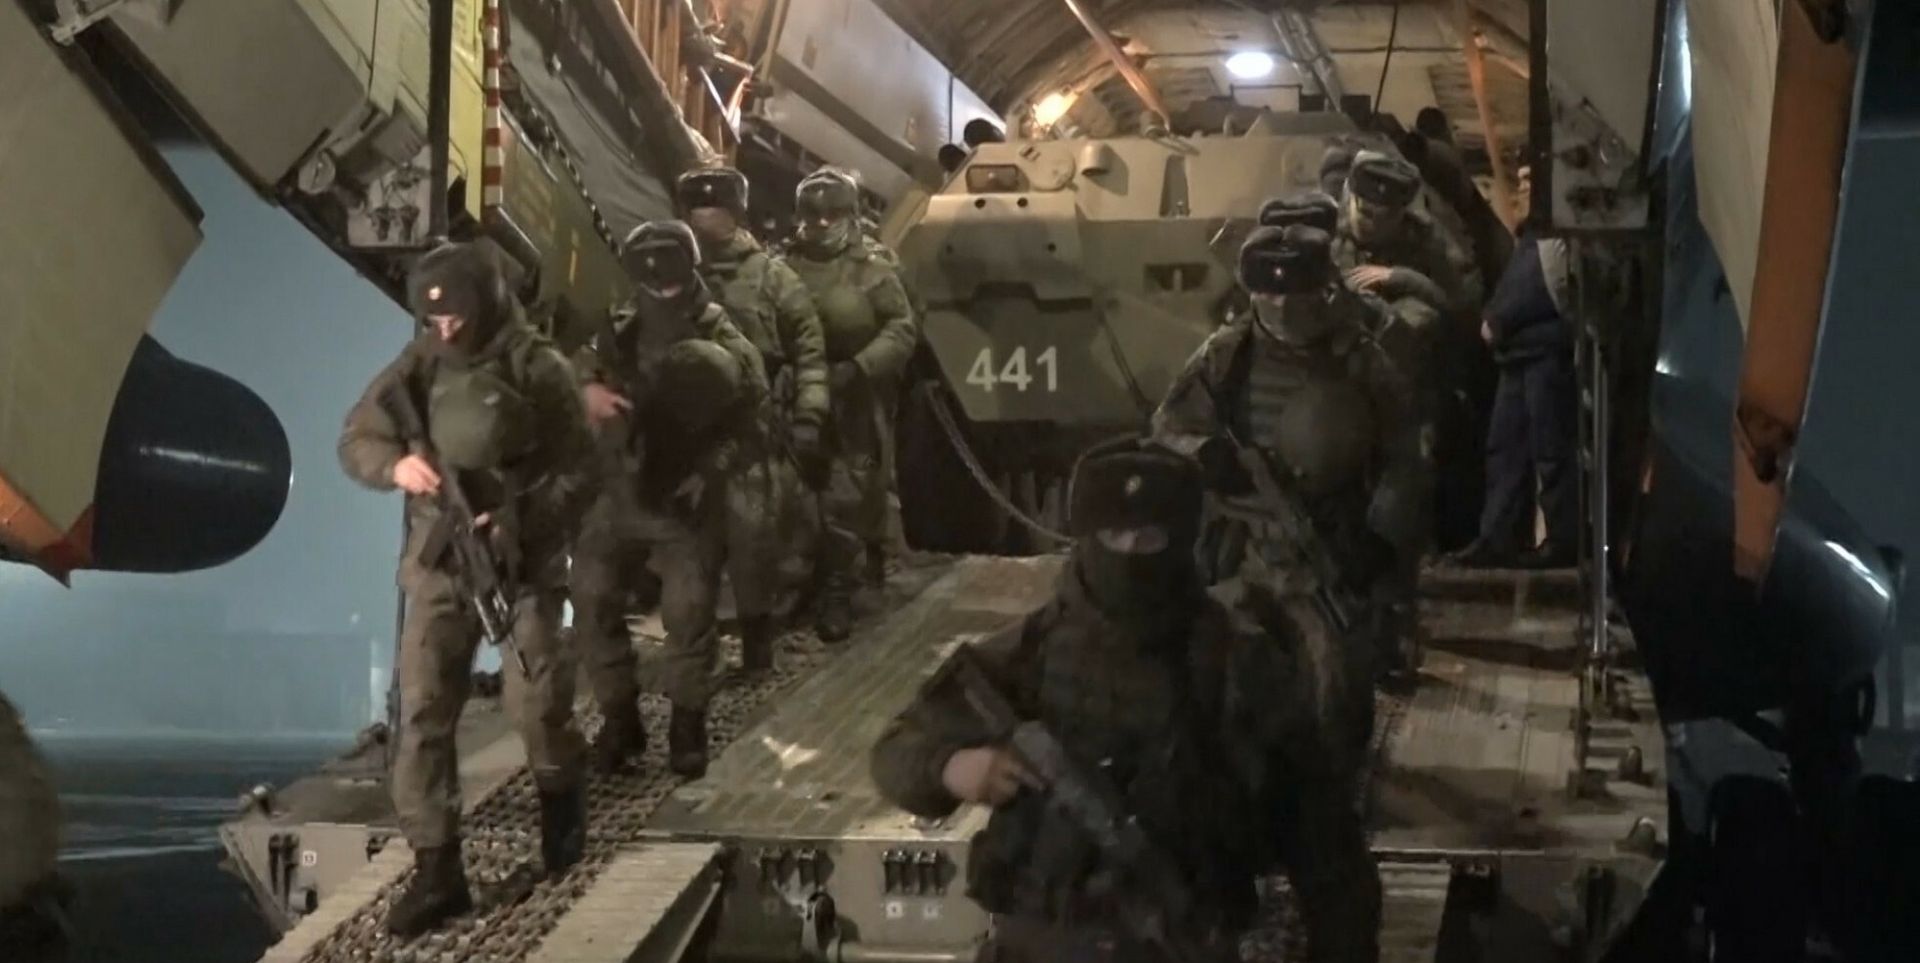 Kadr z nagrania opublikowanego przez rosyjskie ministerstwo obrony. Żołnierze i sprzęt wojskowy Rosyjskich Sił Powietrznych, działających w ramach Organizacji Układu o Bezpieczeństwie Zbiorowym, podczas wyładunku na lotnisku w Kazachstanie